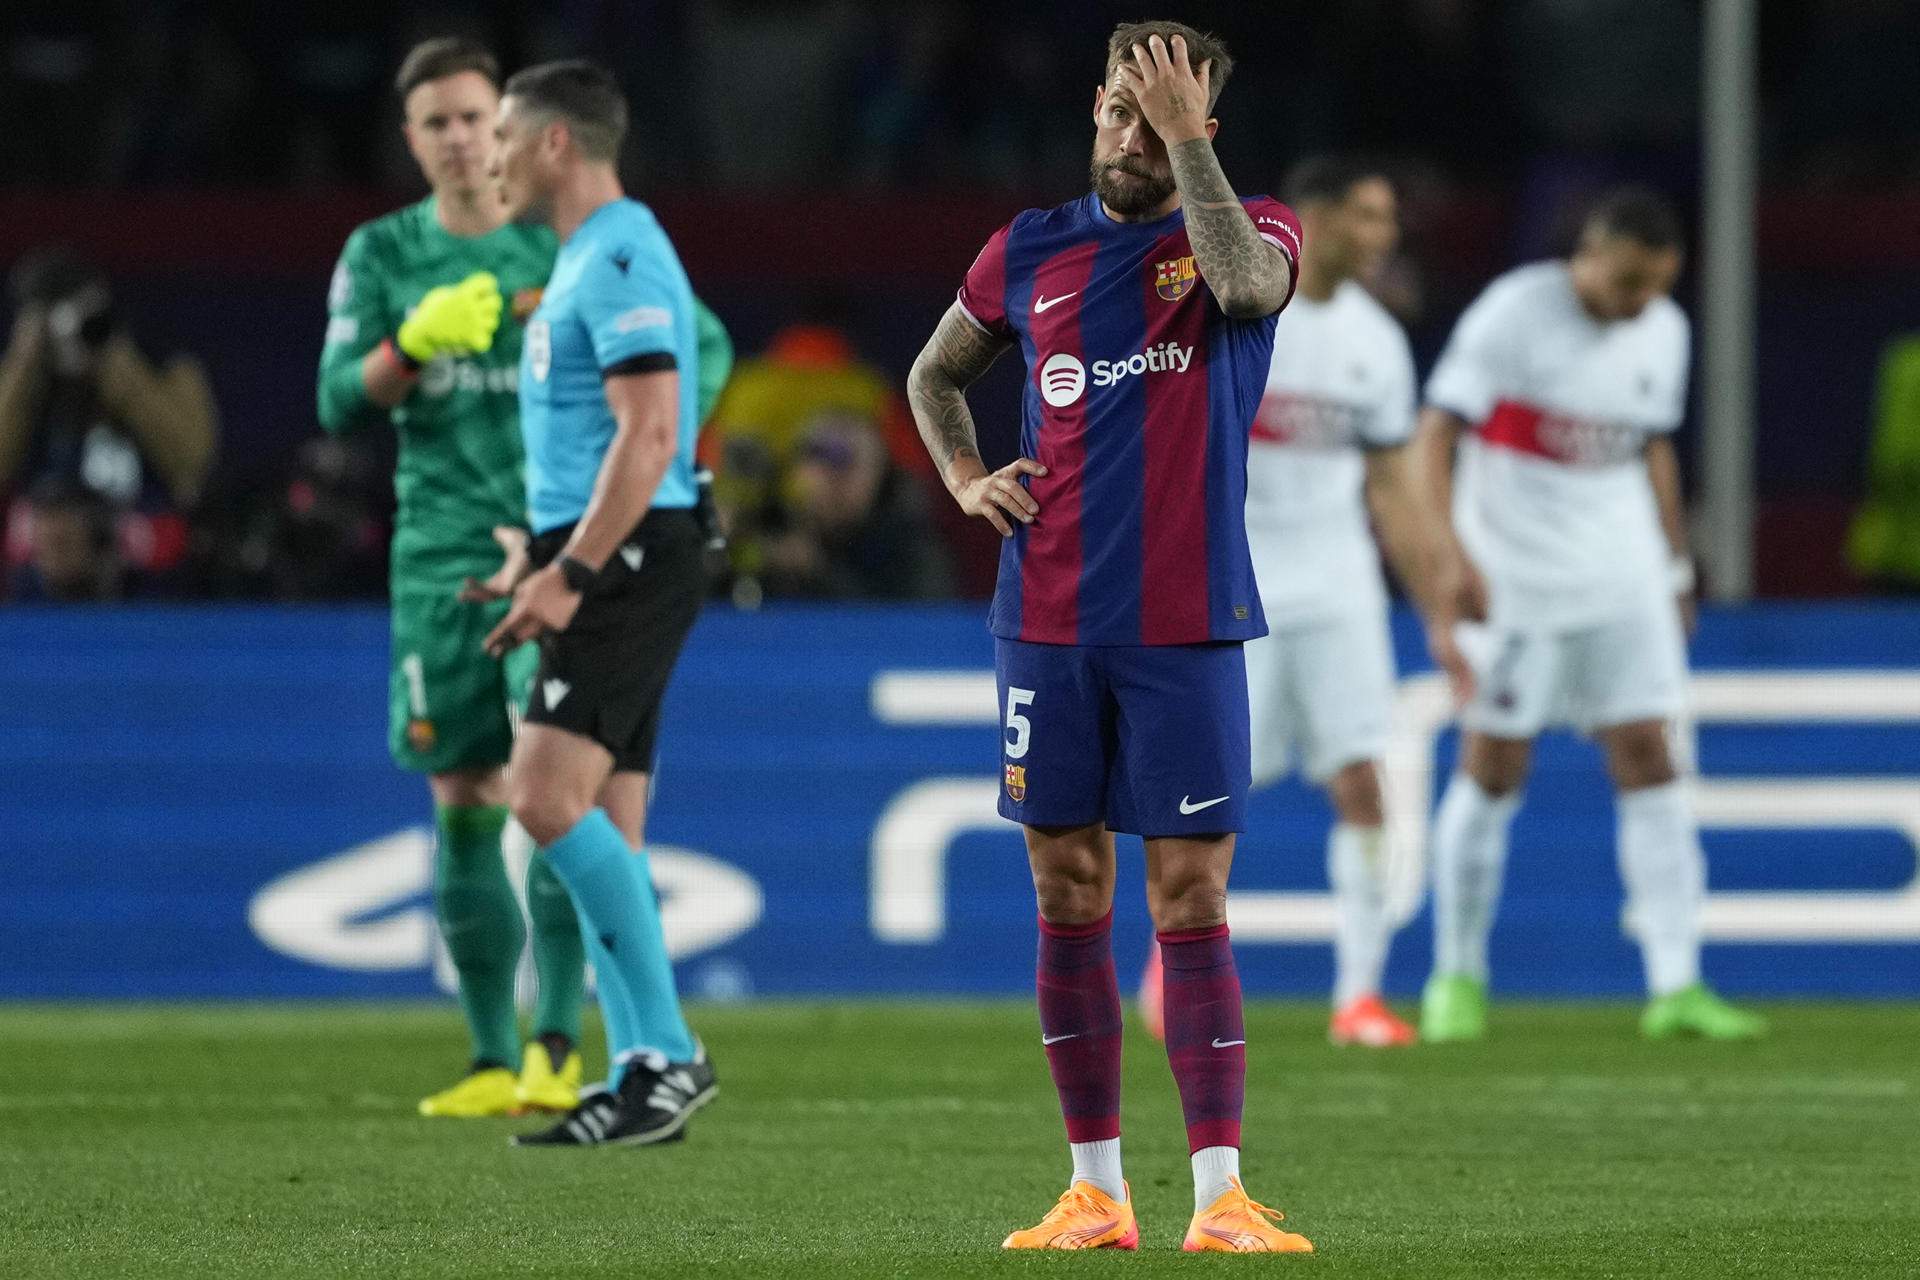 El Barça cau eliminat de la Champions contra el PSG (1-4) en un partit marcat per l'expulsió d'Araujo